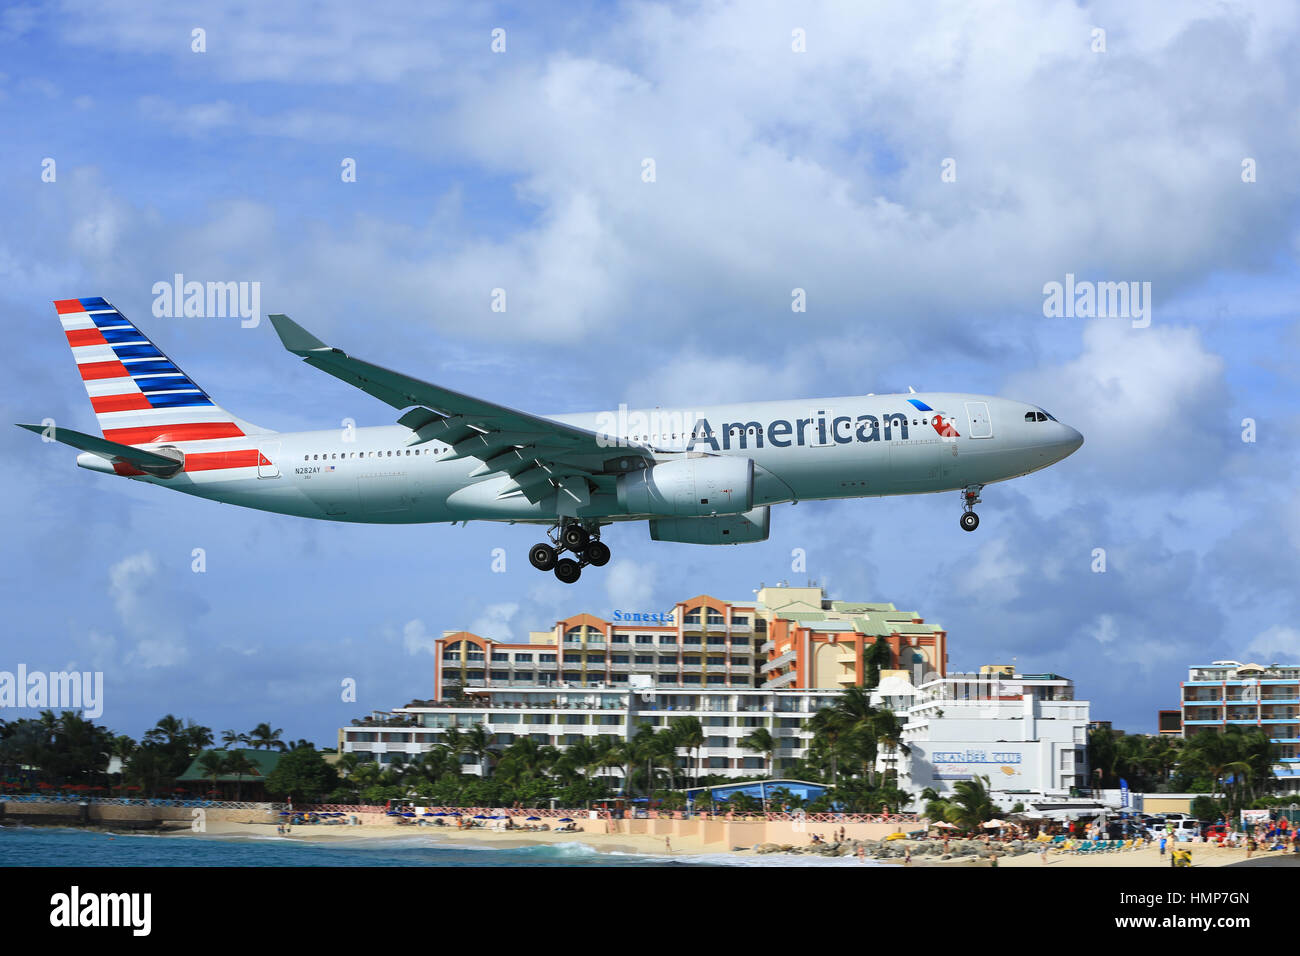 L'American Airlines Airbus A.330 En courte finale à la terre plus de plage de Maho, Sint Maarten Banque D'Images